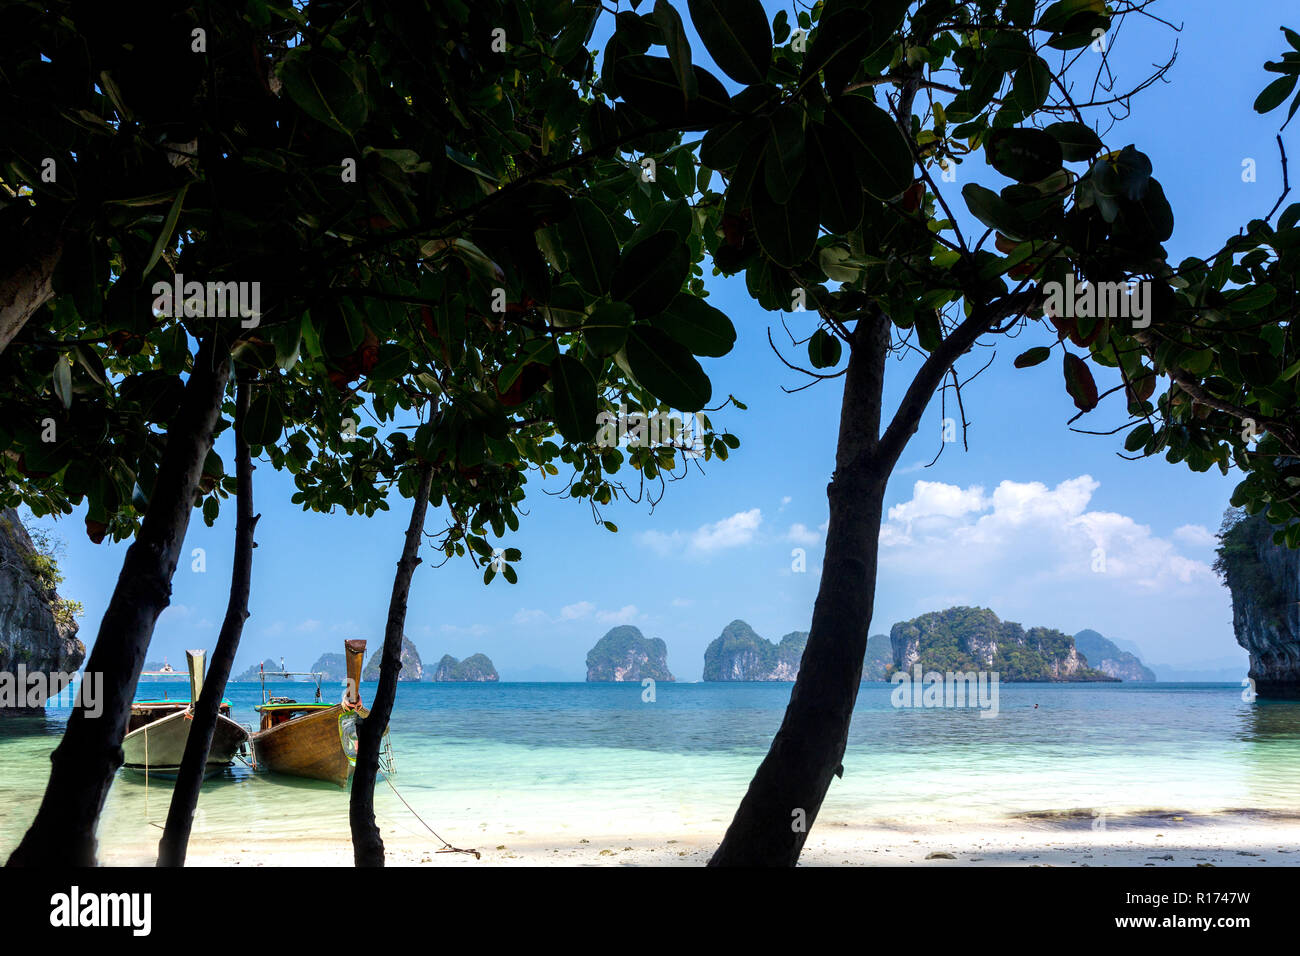 Plage tropicale tranquille avec la silhouette des arbres et bateau longtail dans l'île de Koh Hong, Pang Nga bay, Thaïlande Banque D'Images